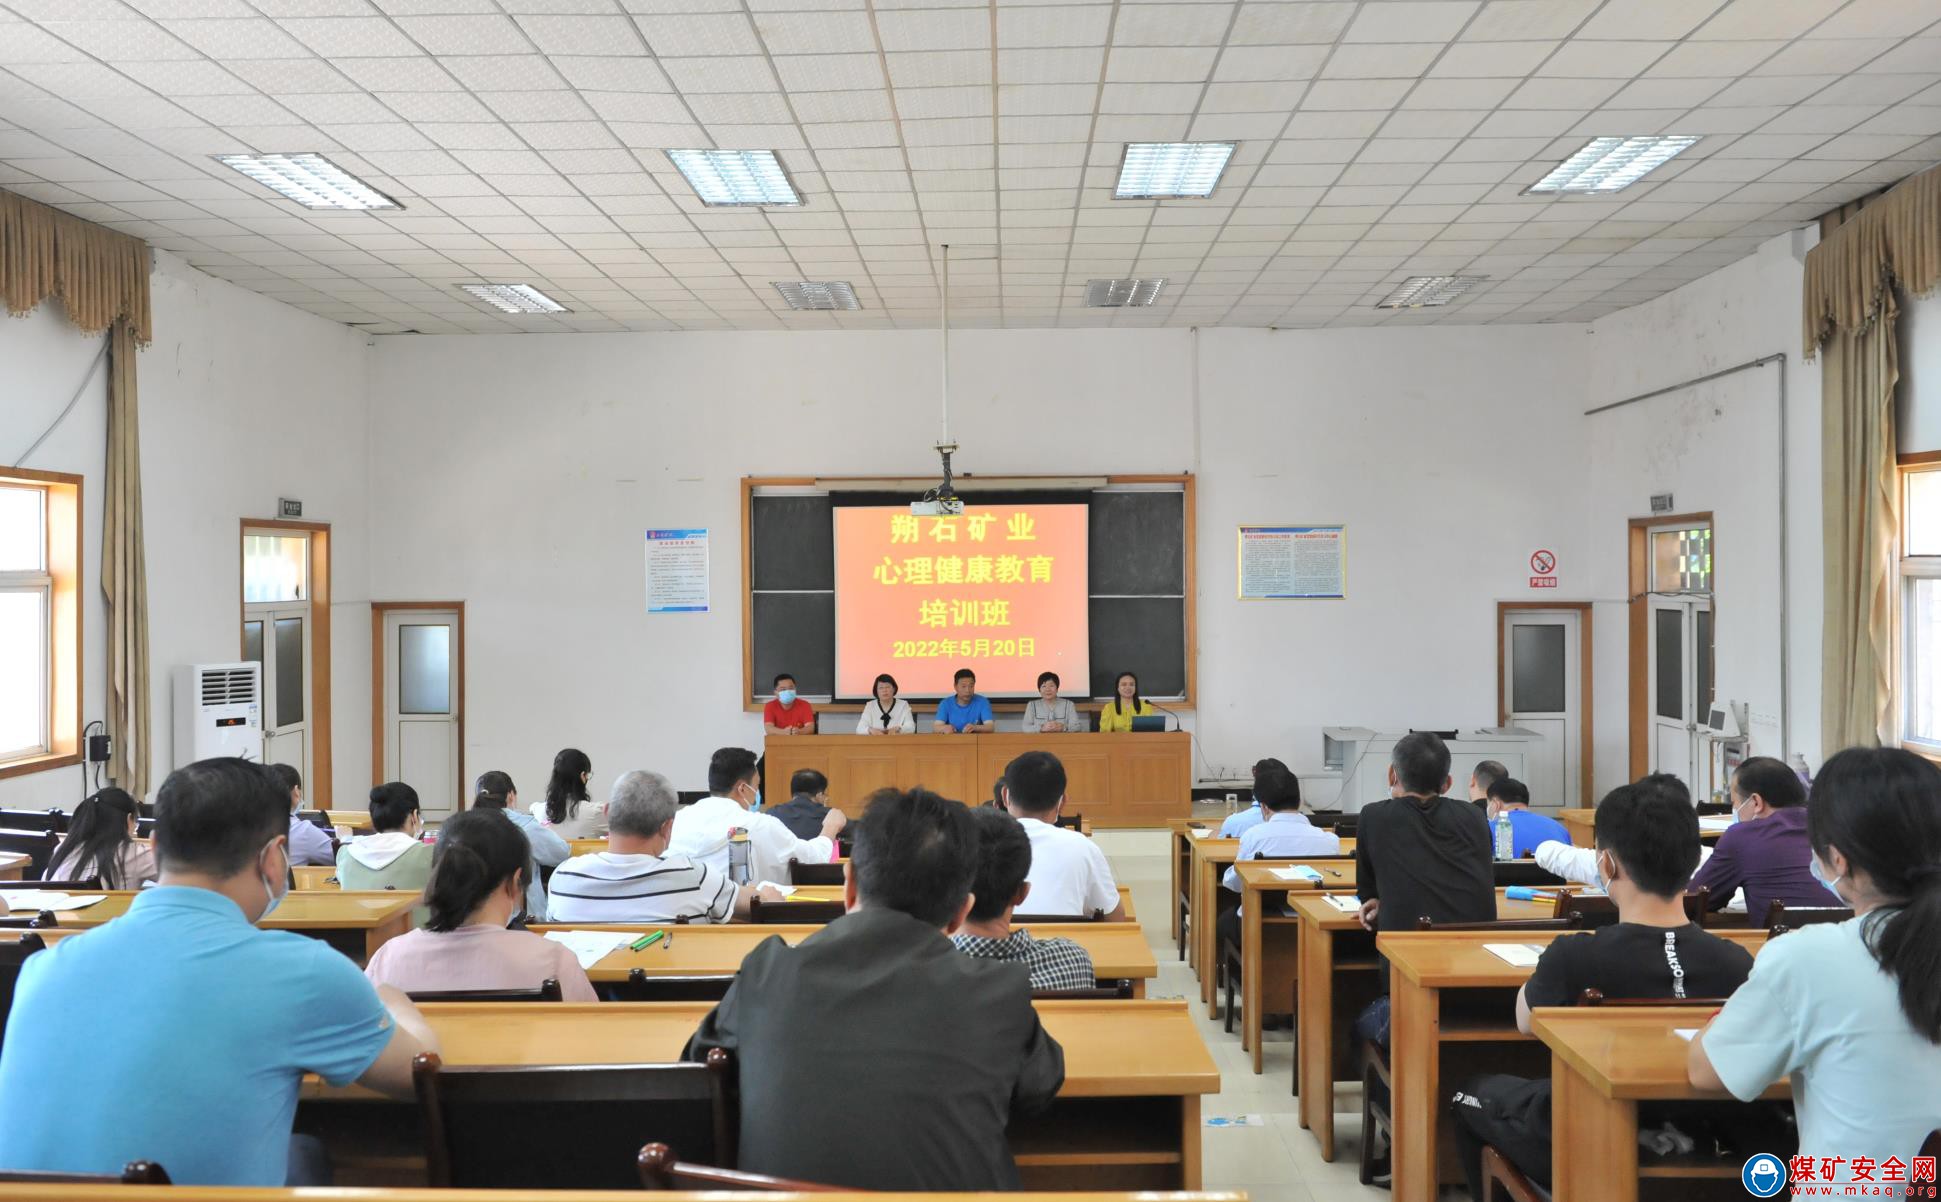 健康從“心”開始---安徽淮北朔石公司舉辦心理健康教育培訓班